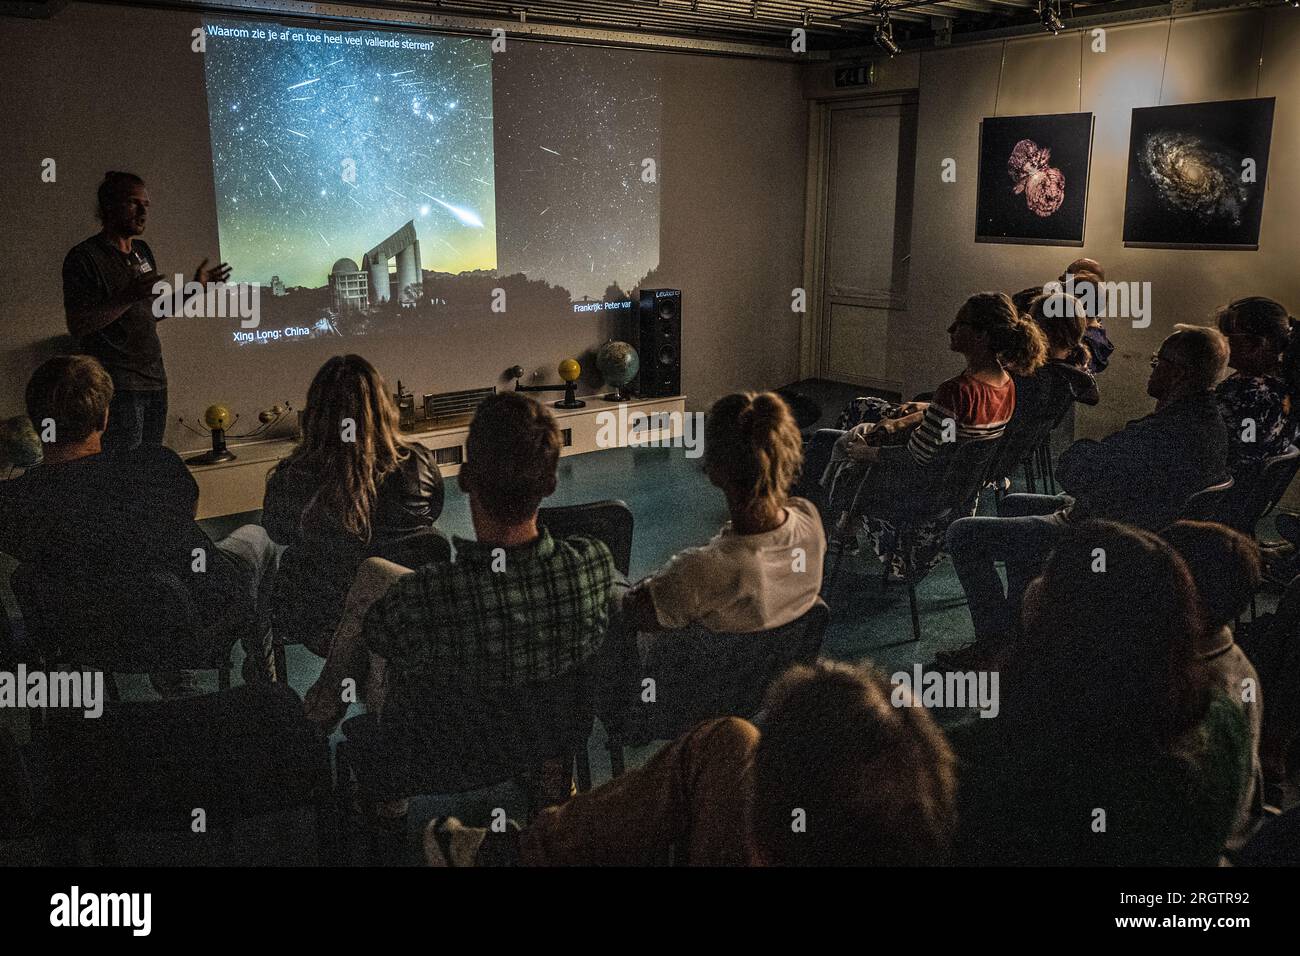 LATTROP - Interessierte sehen sich eine Präsentation über Sternschnuppen auf dem Cosmos-Observatorium in Lattrop, Twente, zum Meteoritenschauer an. Für zwei Nächte können die Sternschnuppen bewundert werden, da es dieses Jahr kein Mondlicht gibt. ANP VINCENT JANNINK netherlands Out - belgium Out Credit: ANP/Alamy Live News Stockfoto